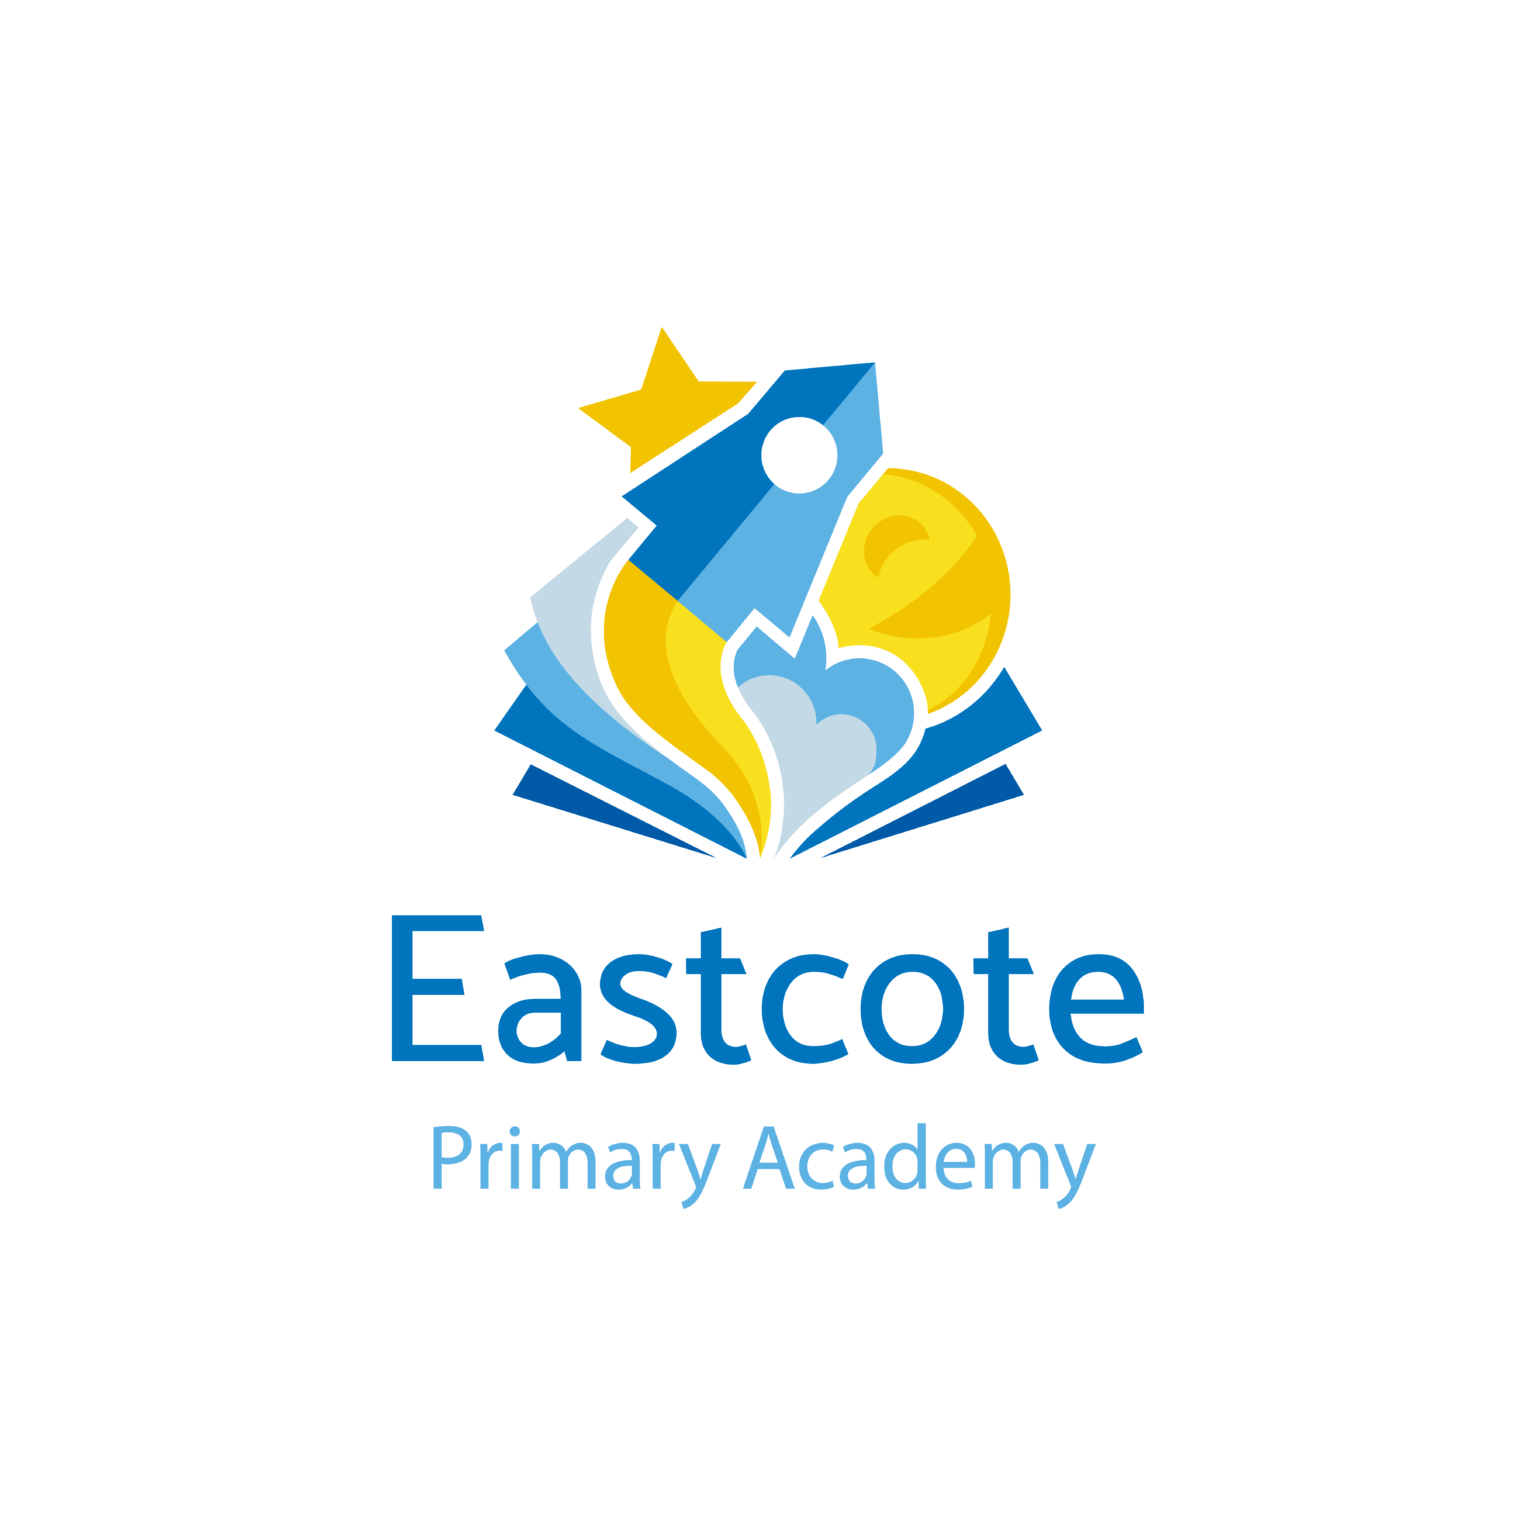 Eastcote Primary Academy logo